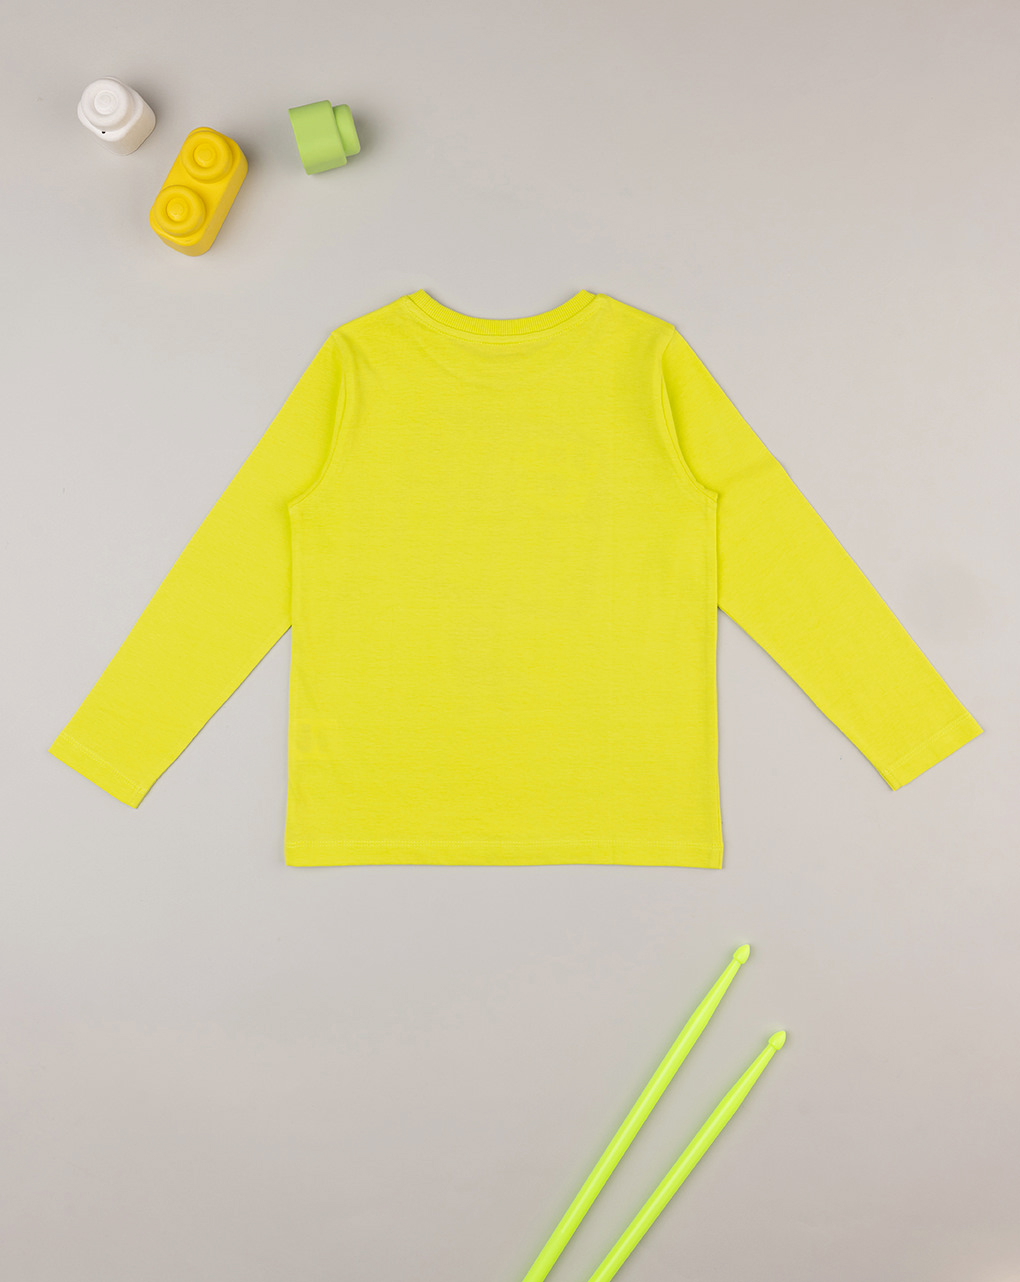 παιδική μπλούζα κίτρινη με δεινόσαυρο για αγόρι - Prénatal